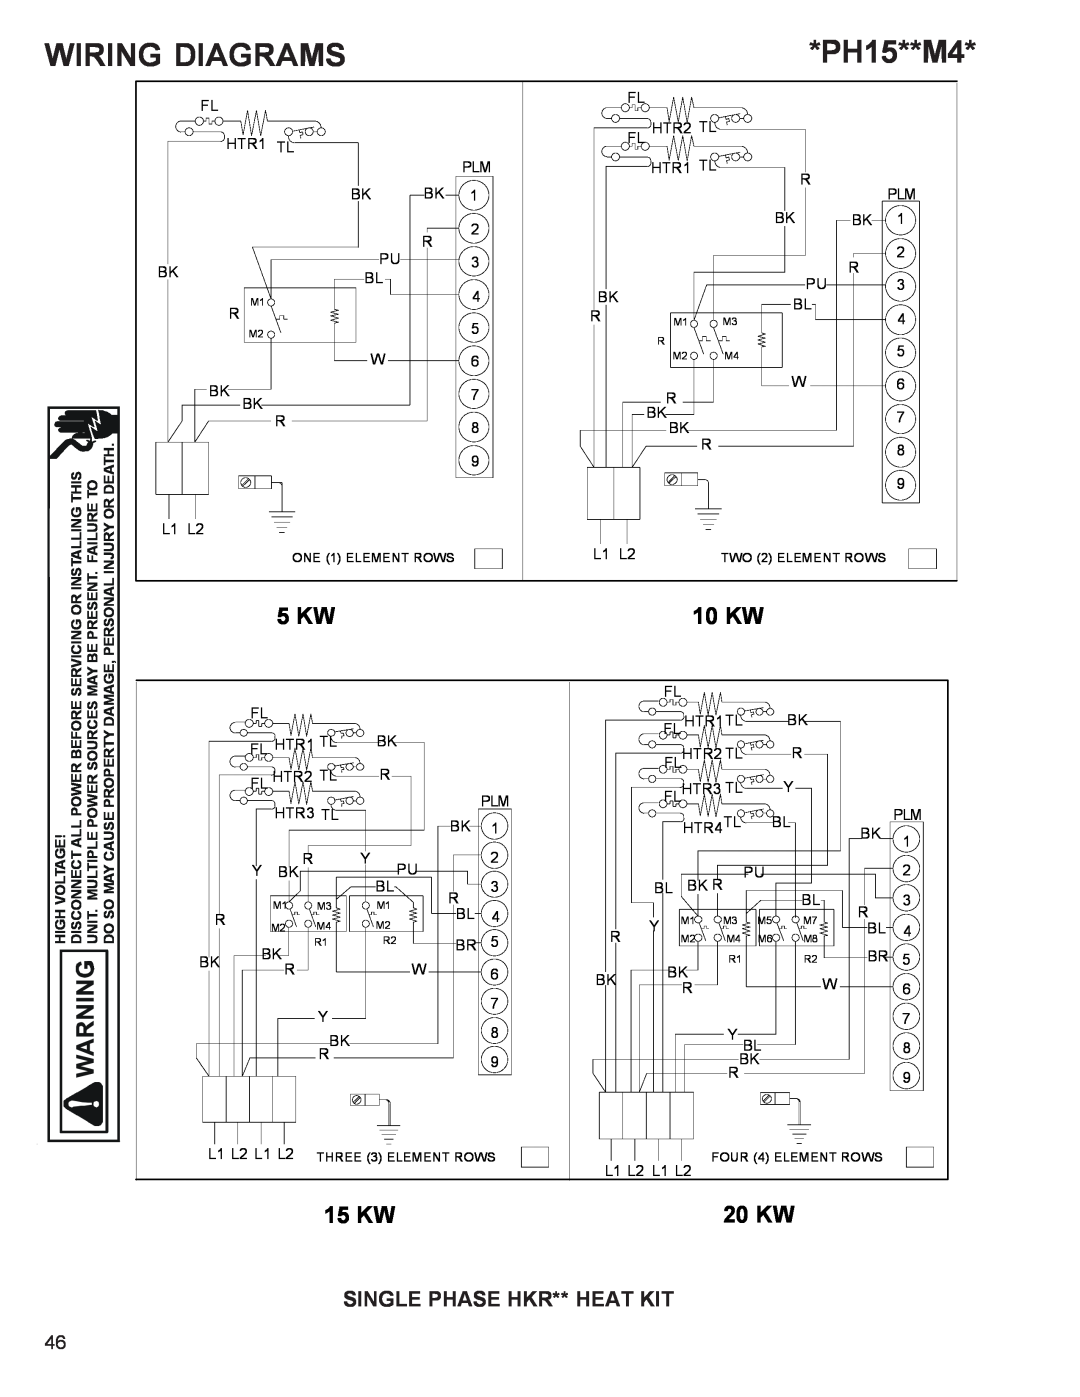 Goodman Mfg R-410A manual 10 KW, 15 KW, 20 KW, Single Phase Hkr** Heat Kit, Wiring Diagrams, PH15**M4 